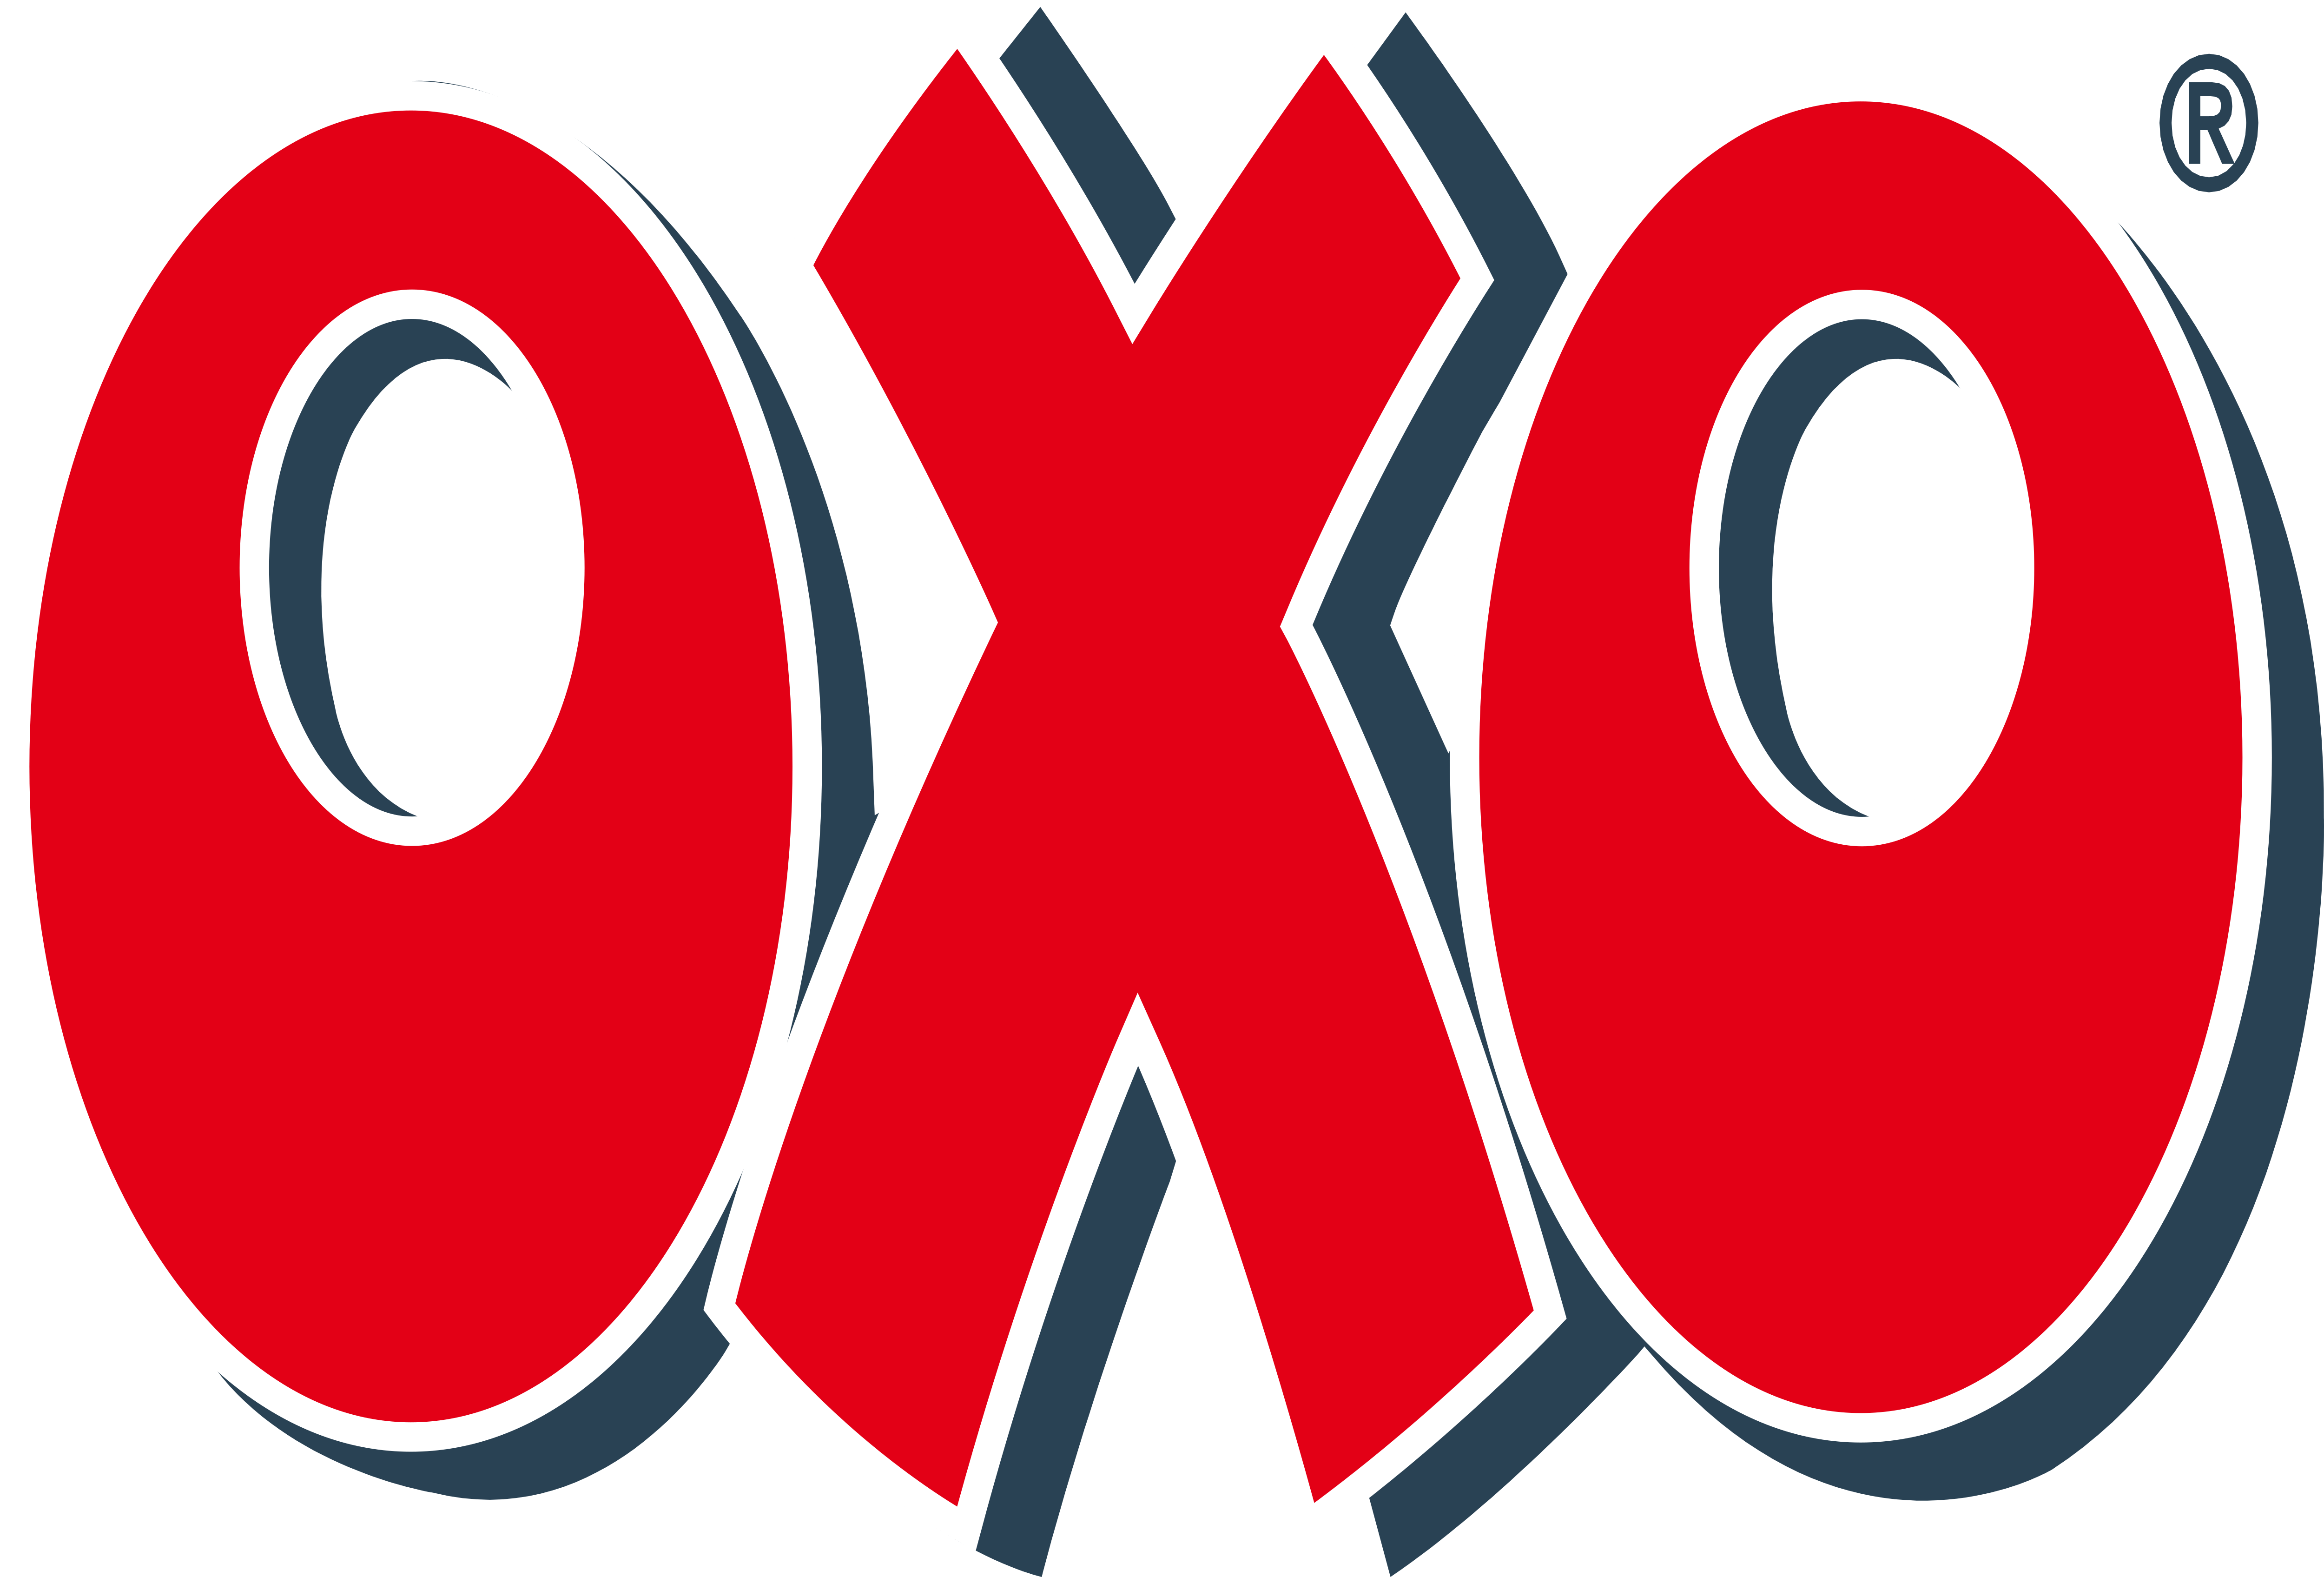 OXO Logo - OXO – Logos Download